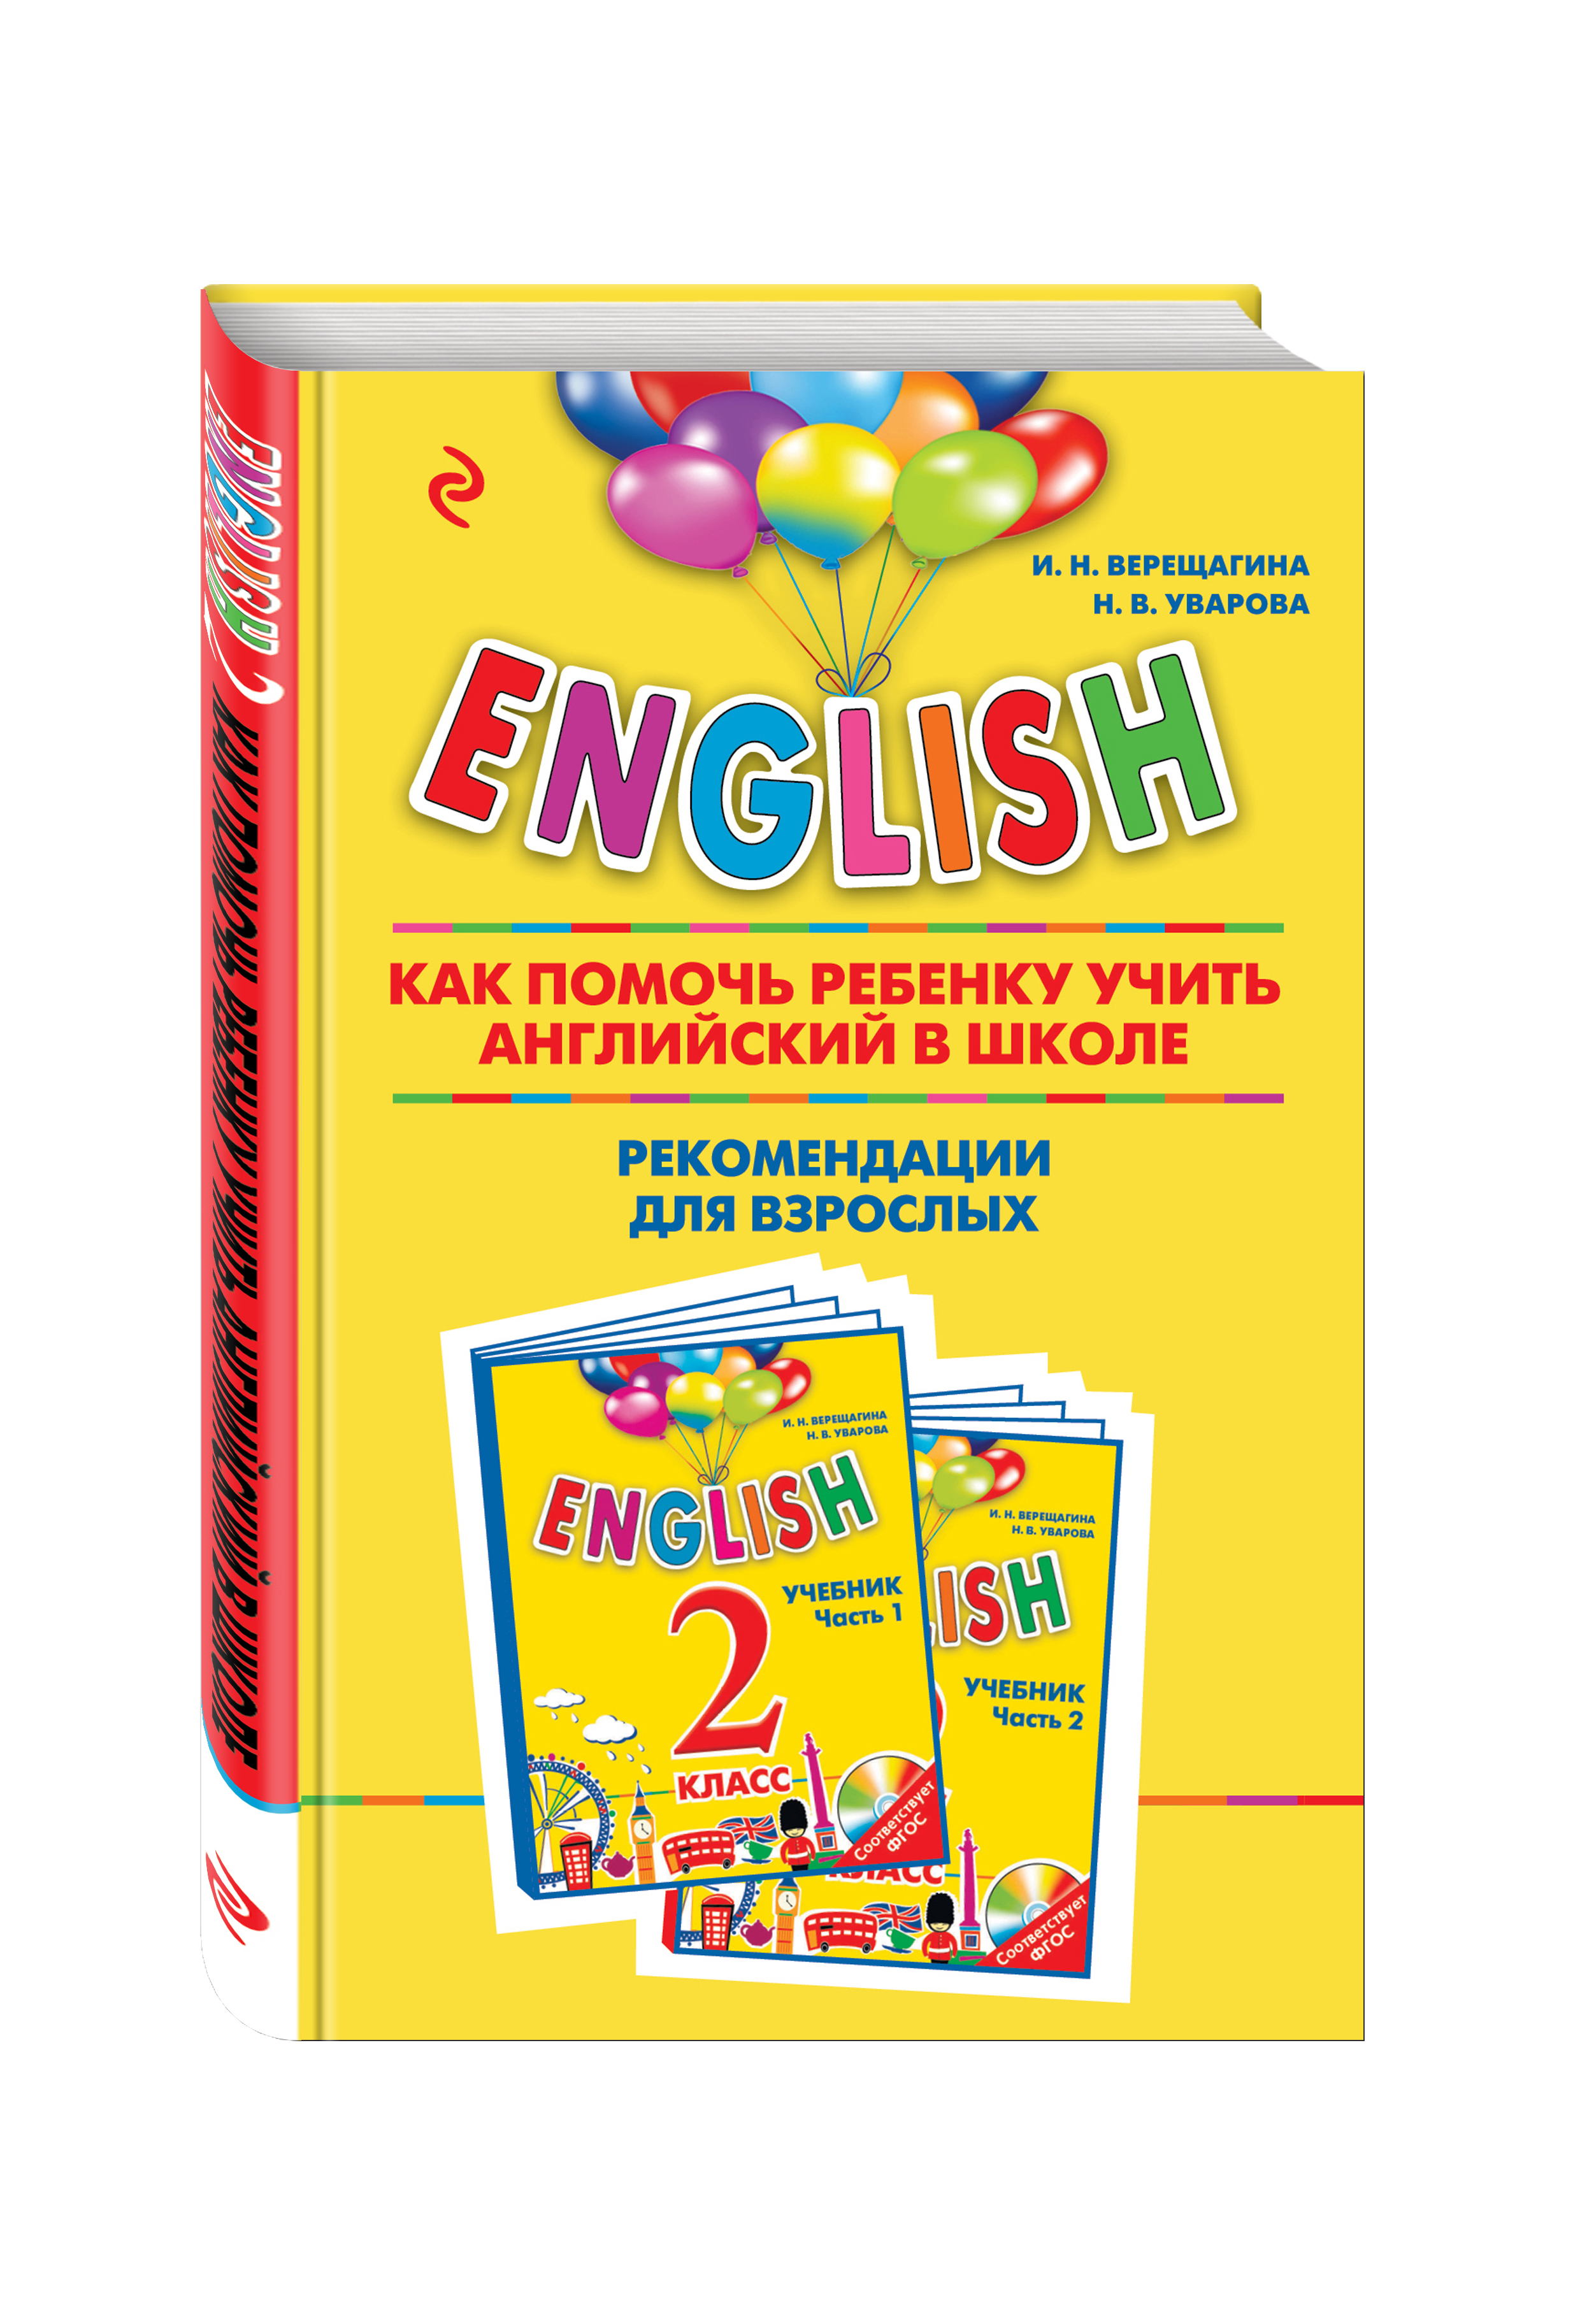 Учебник верещагина 2 класс английский аудио. Учебник по английскому для малышей. По английски Уварова.